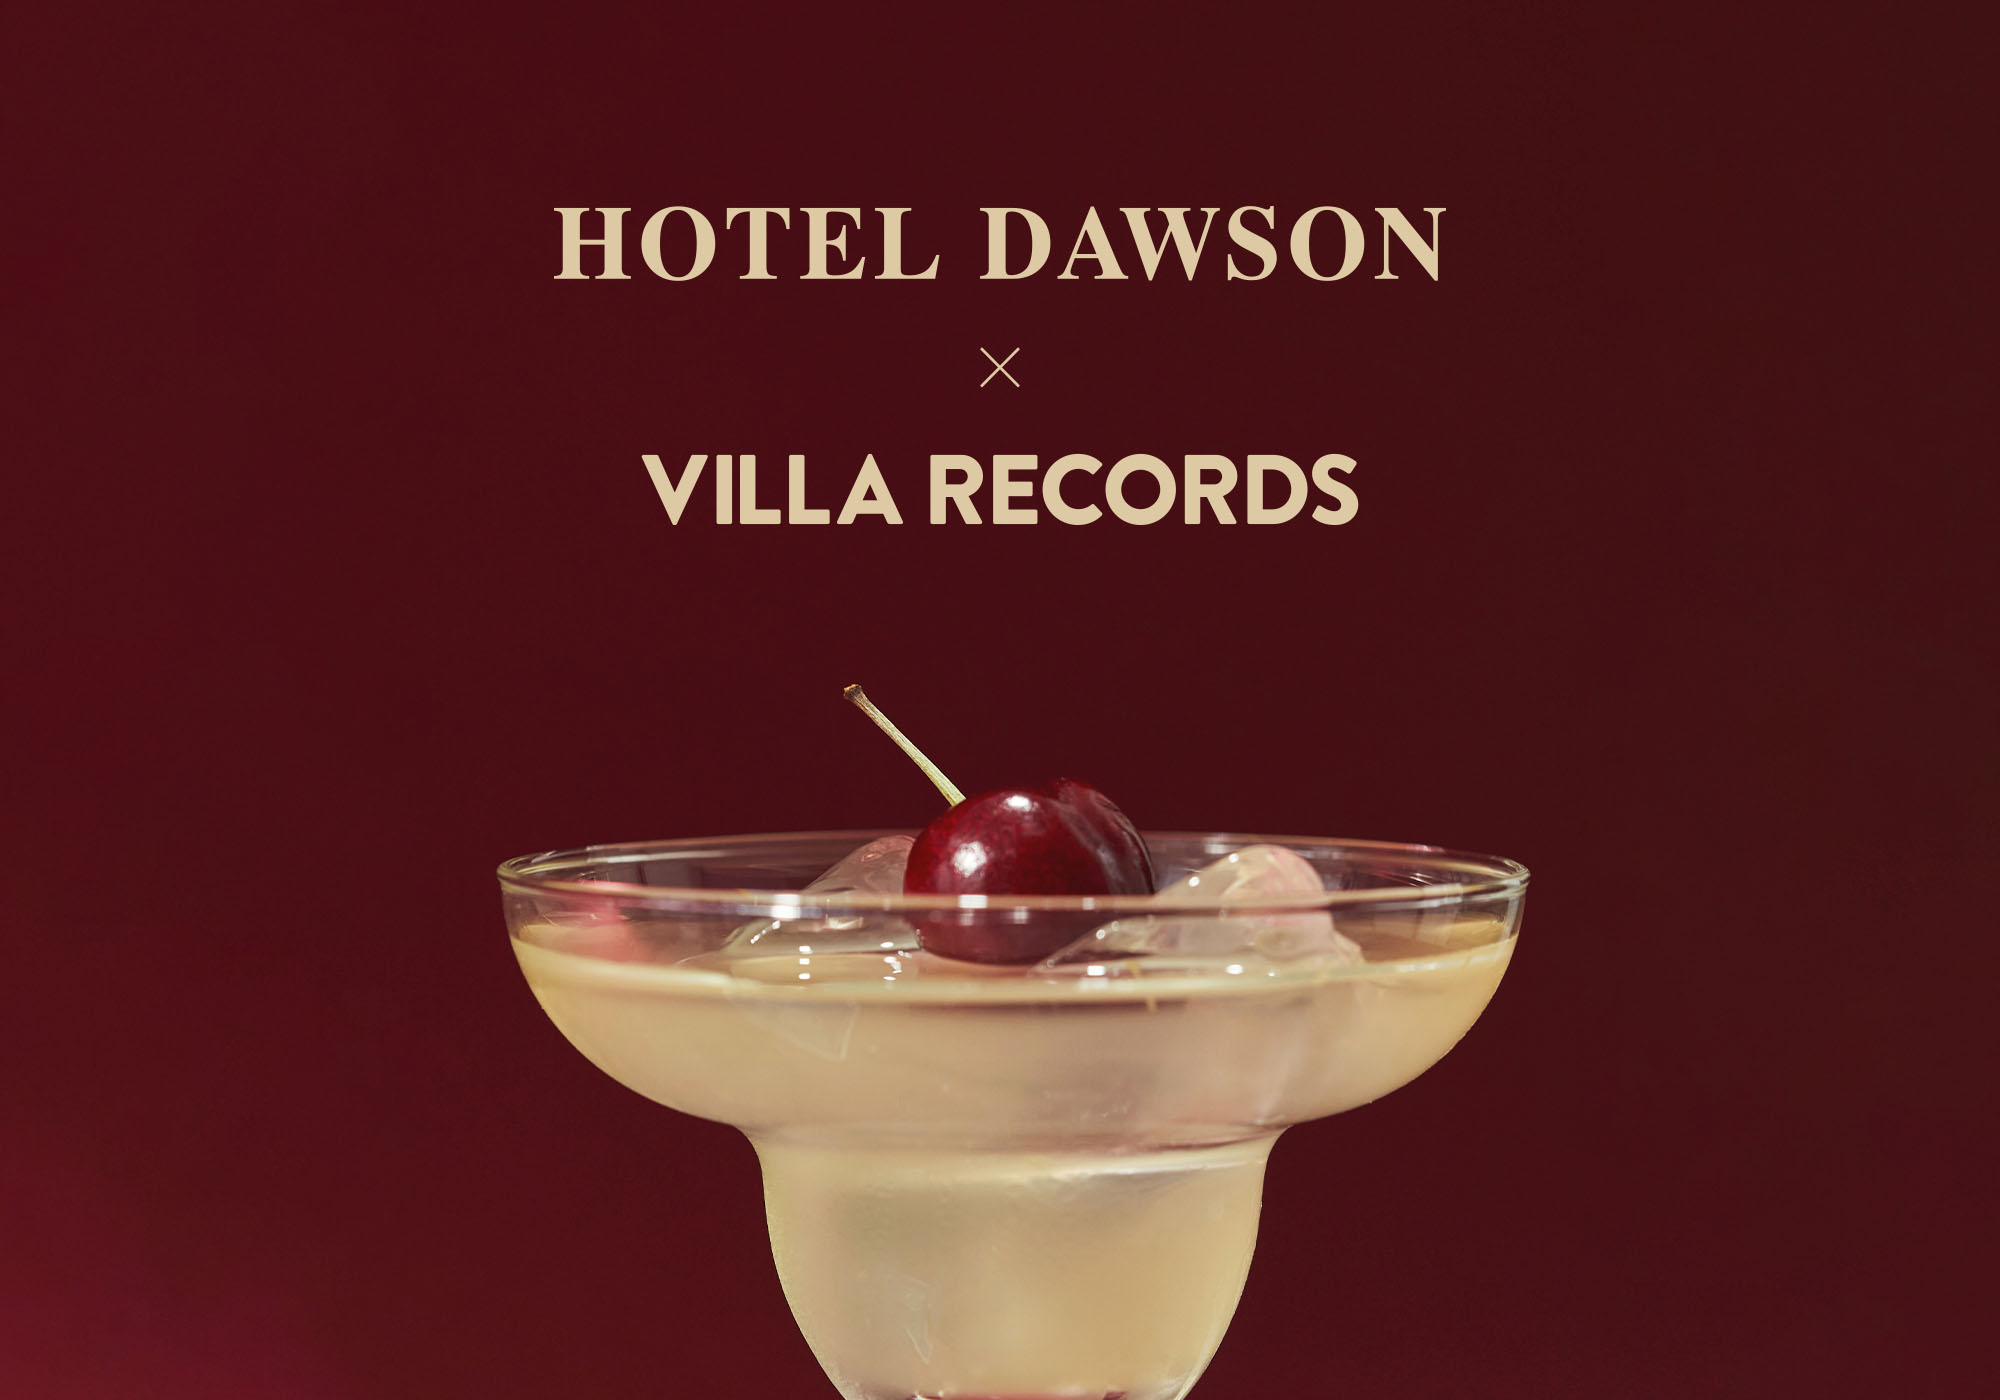 VILLA RECORDS X HOTEL DAWSON